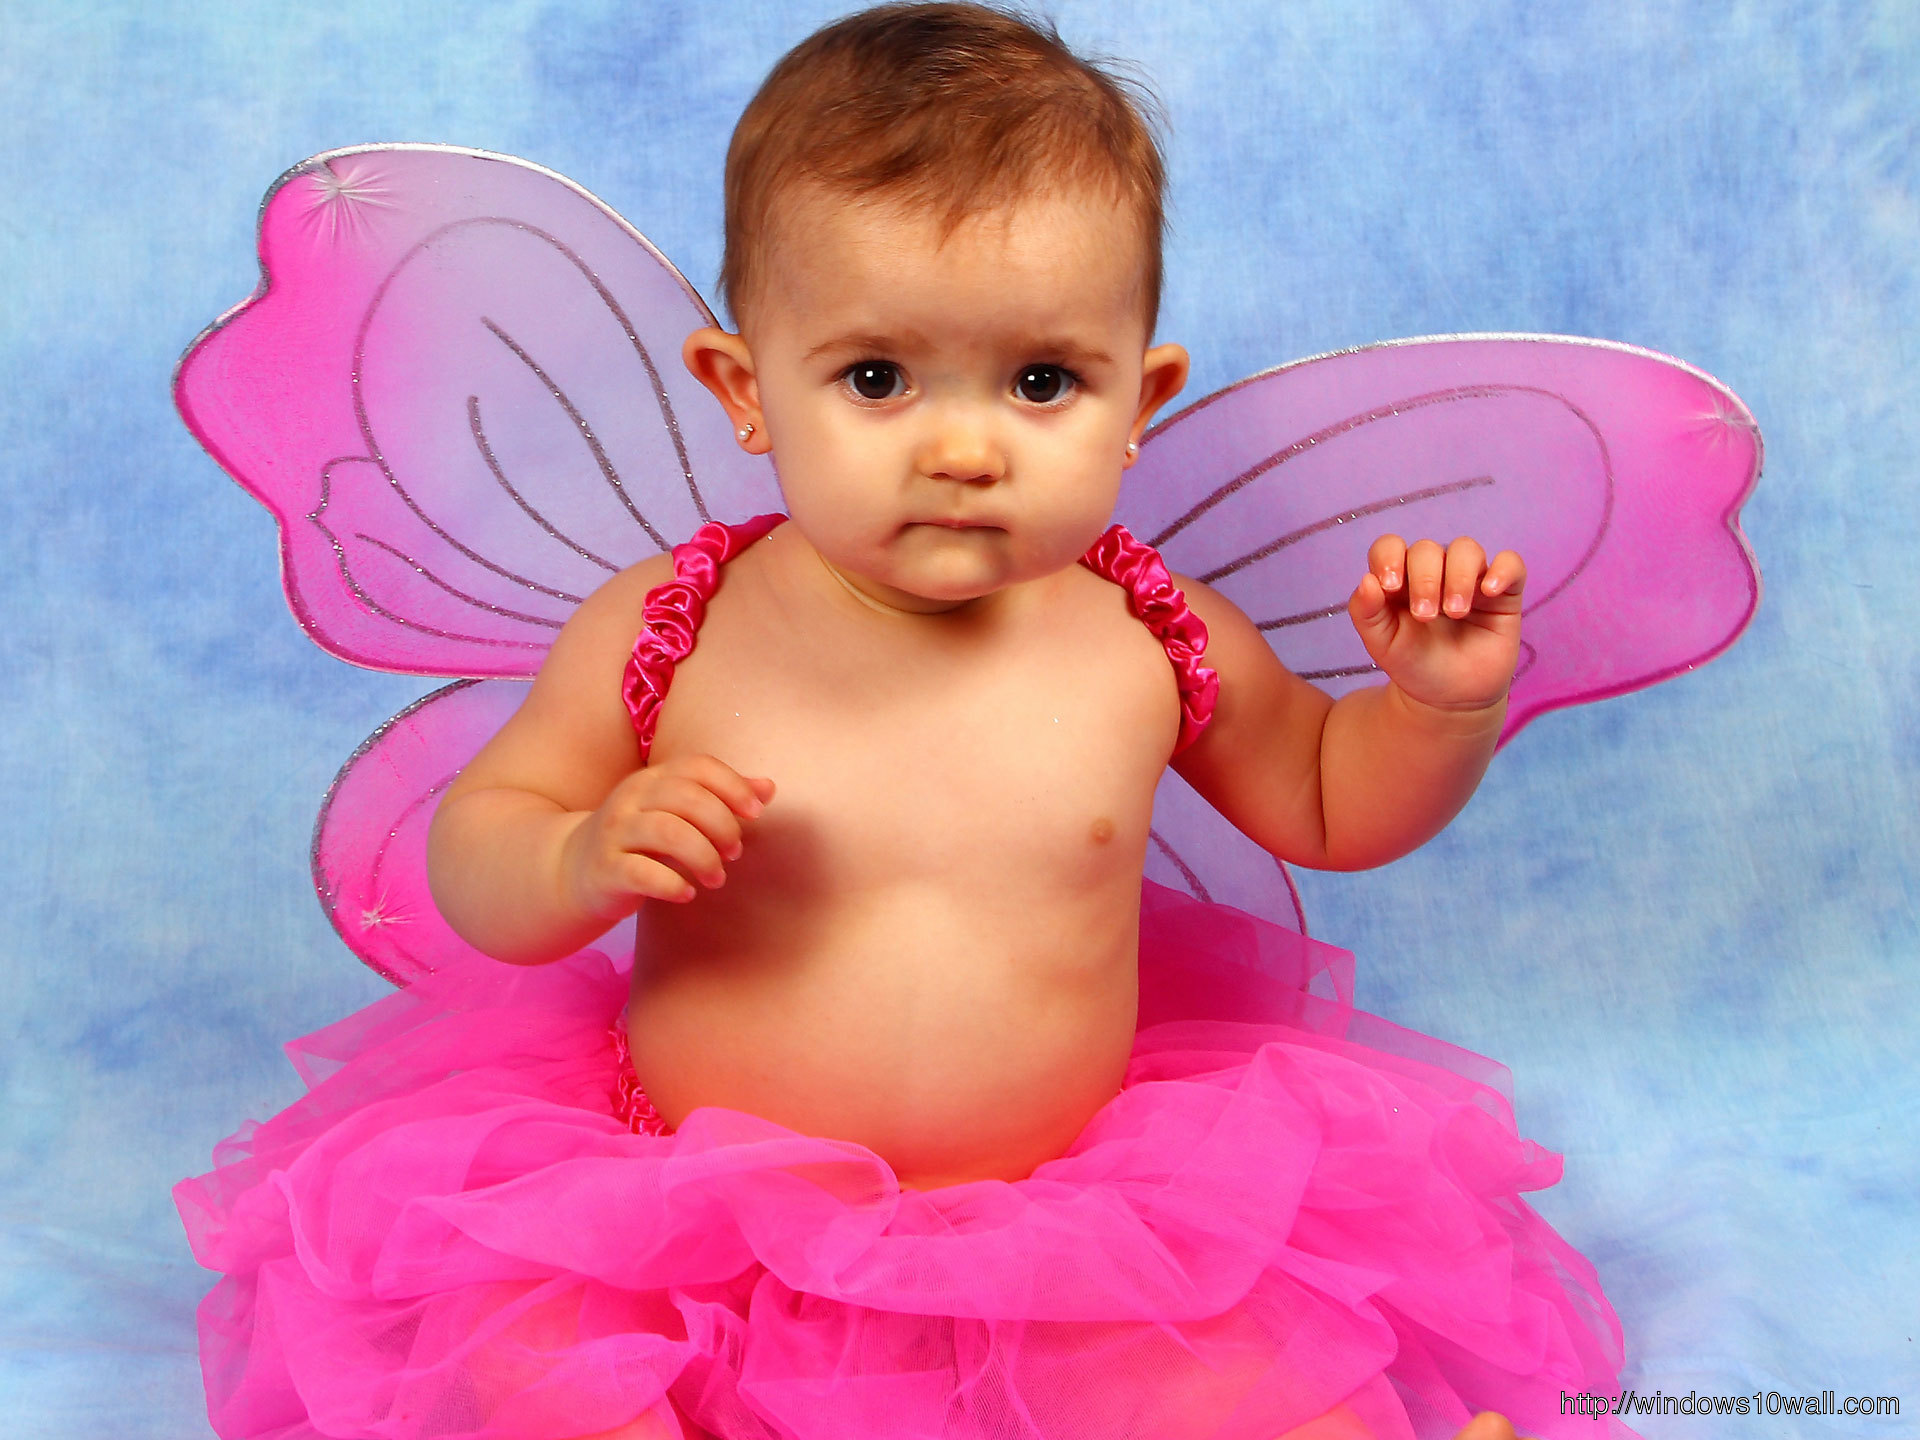 Cute Baby Girl in fancy dress Wallpapers